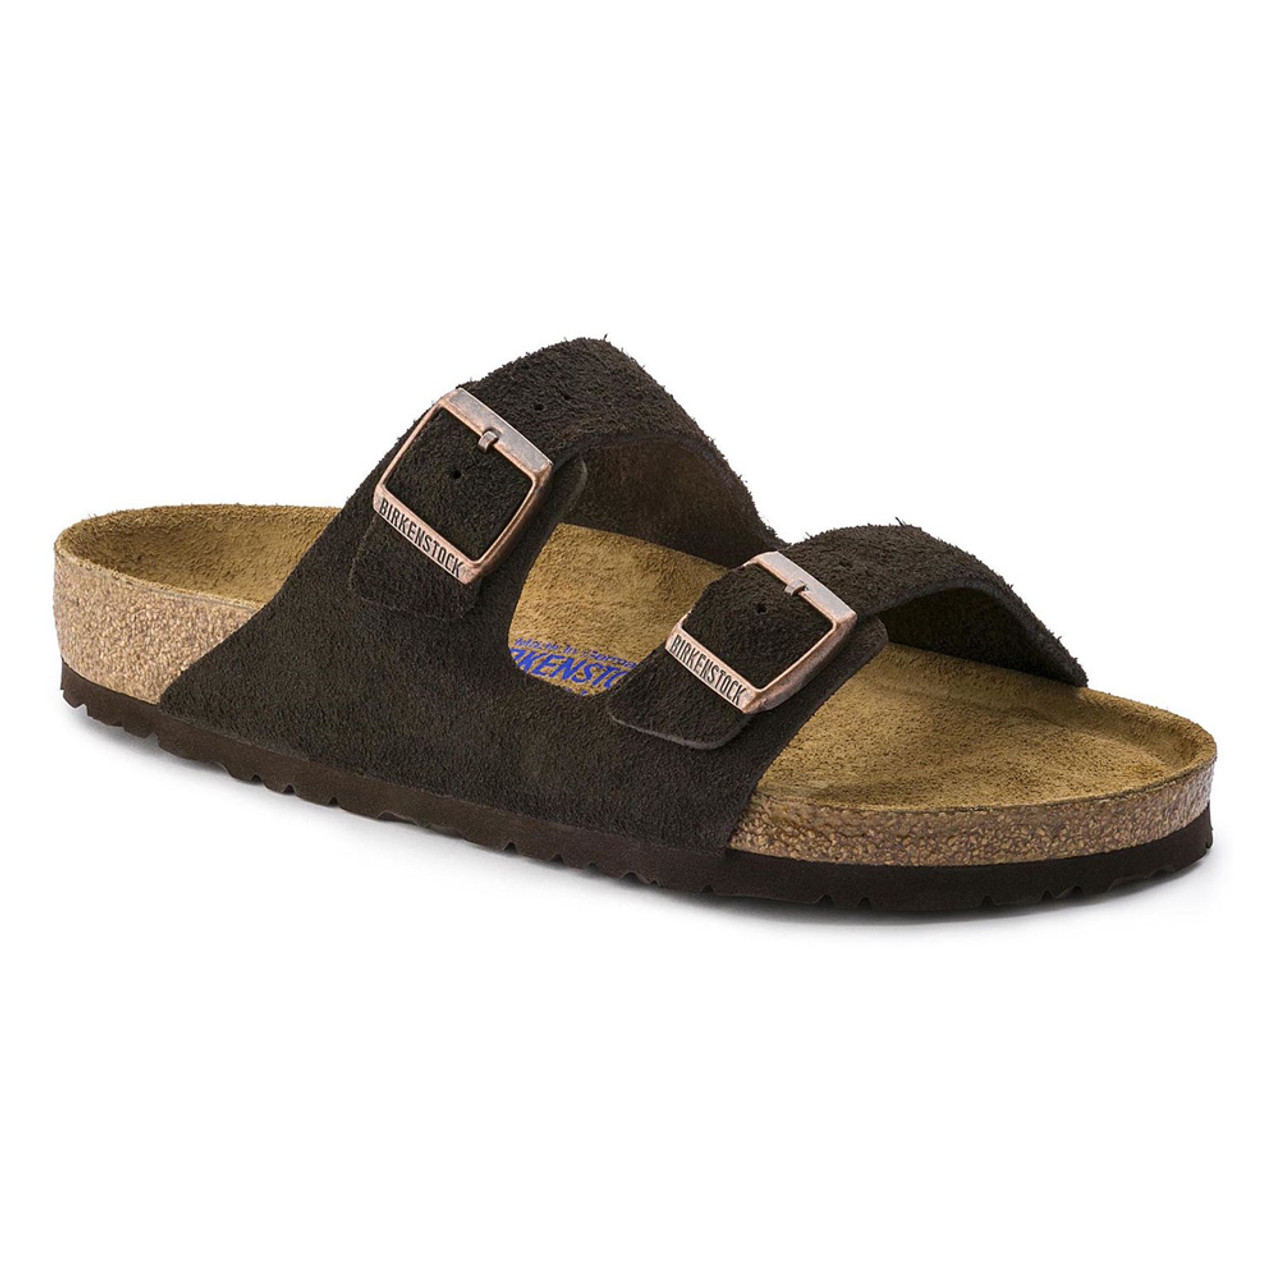 birkenstock women's suede sandals